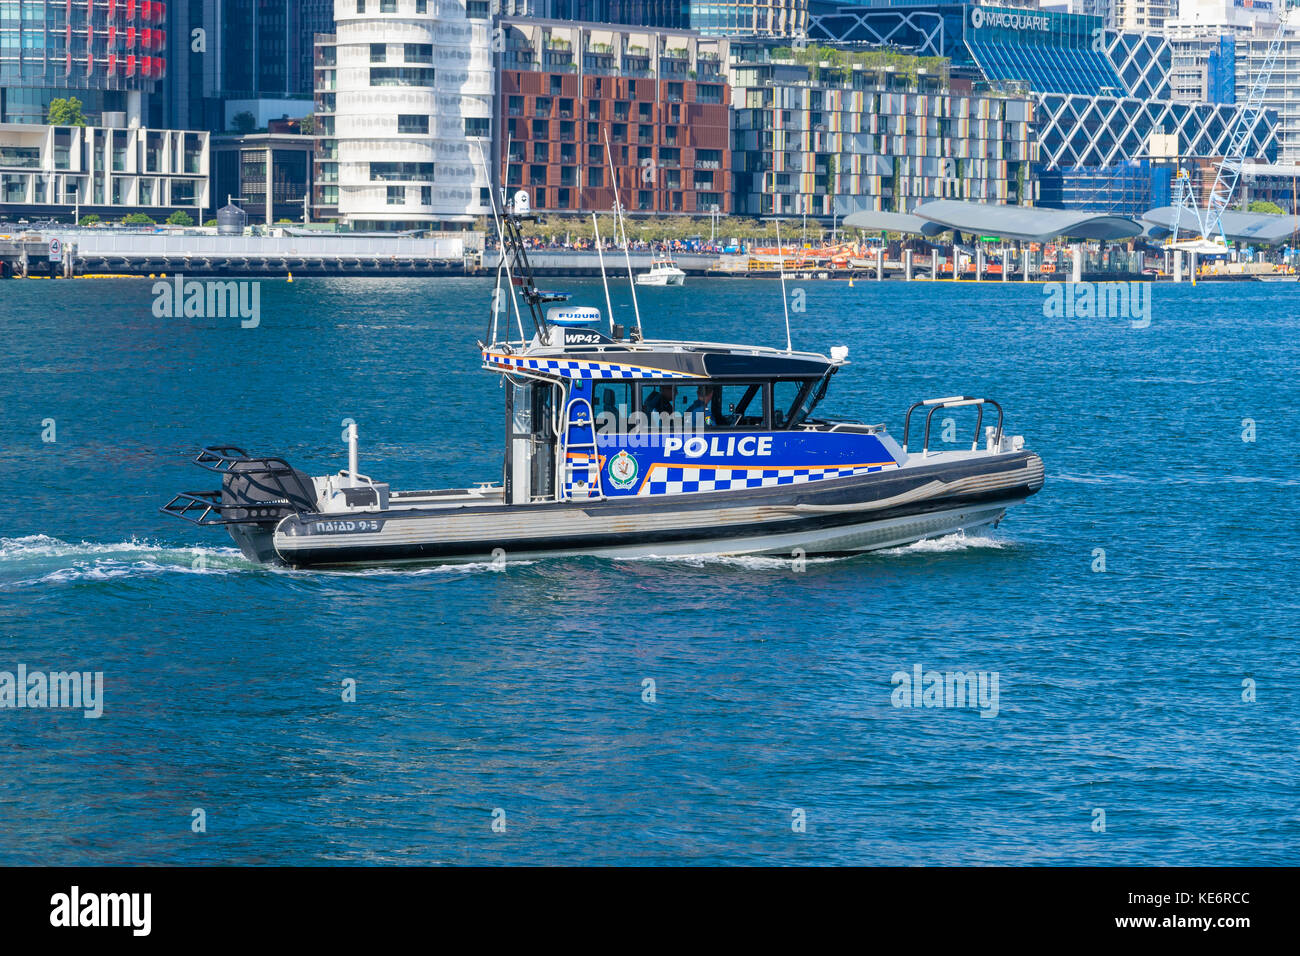 Vue rapprochée d'un bateau de police patrouillant dans la région de Sydney, Australie Banque D'Images